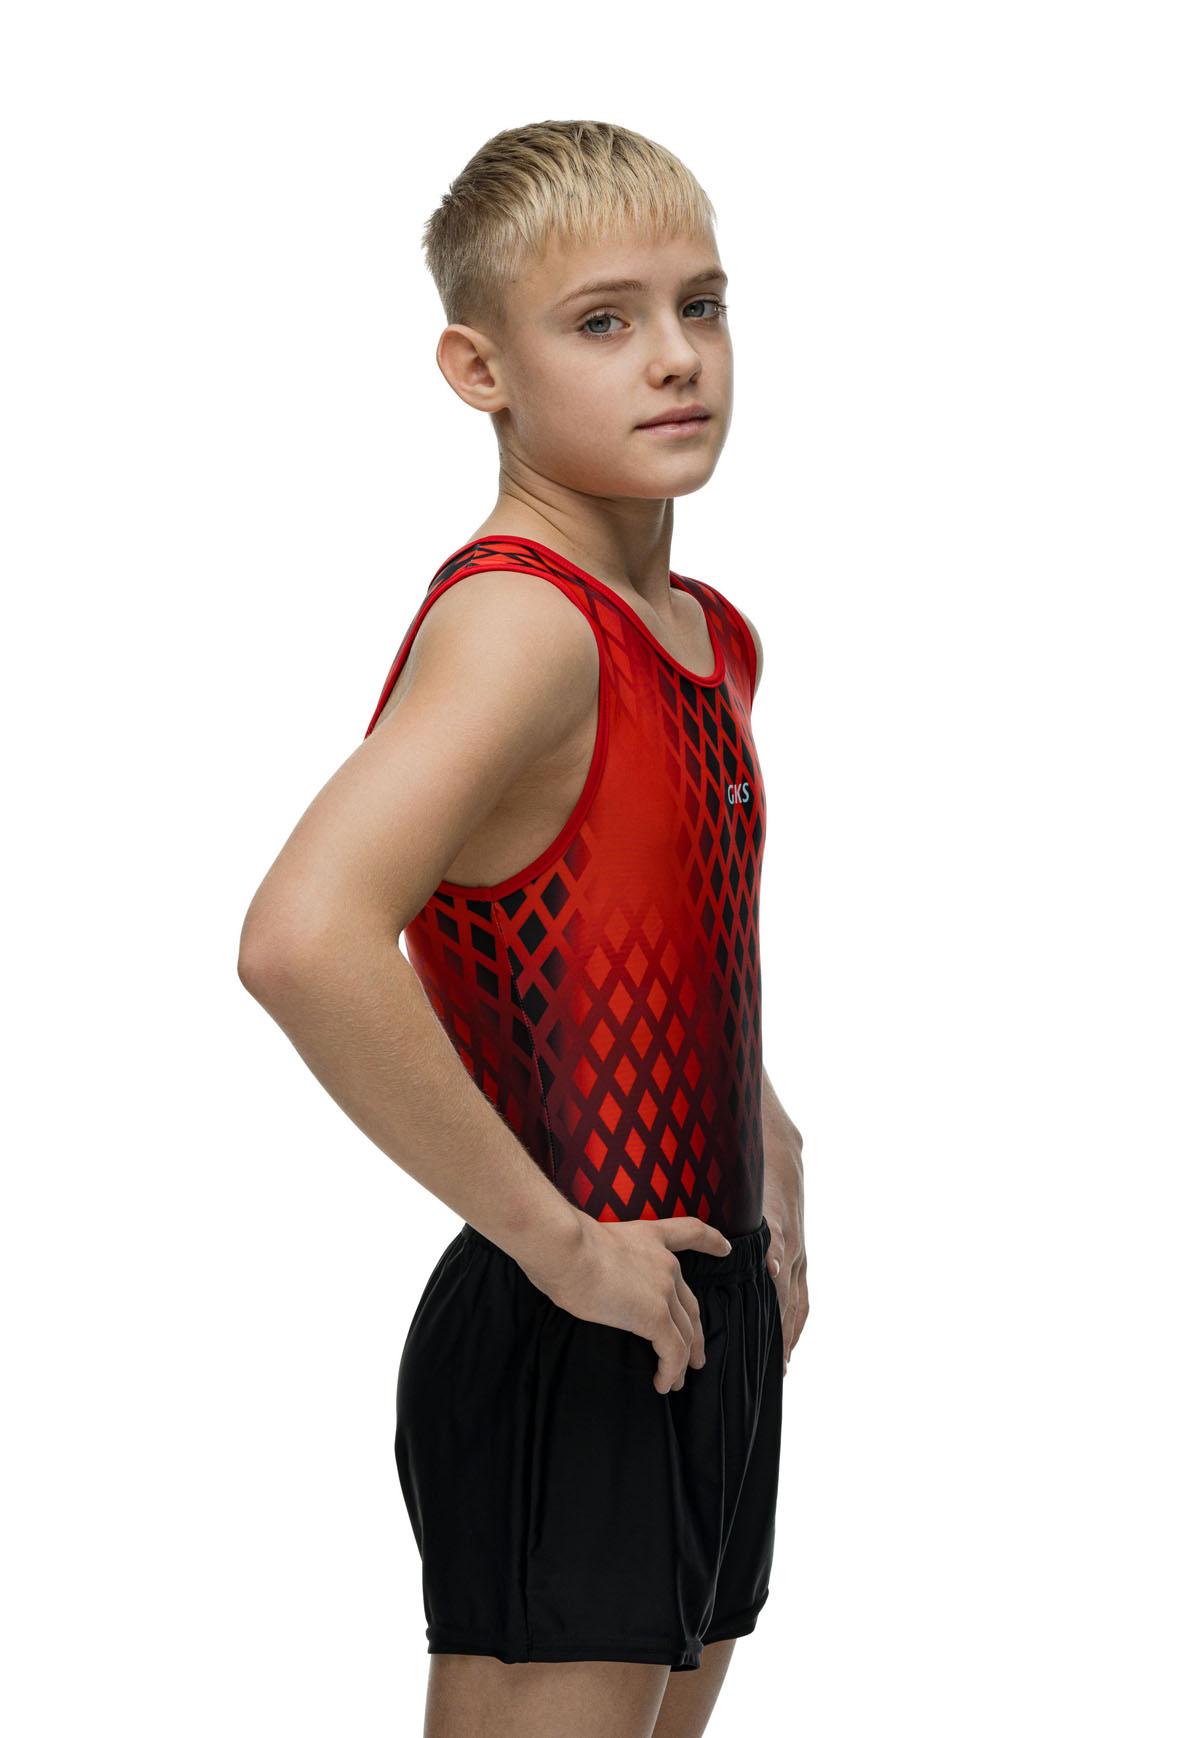 Купальник мужской для спортивной гимнастики GK Sport 201-50 красный с черным без рукава